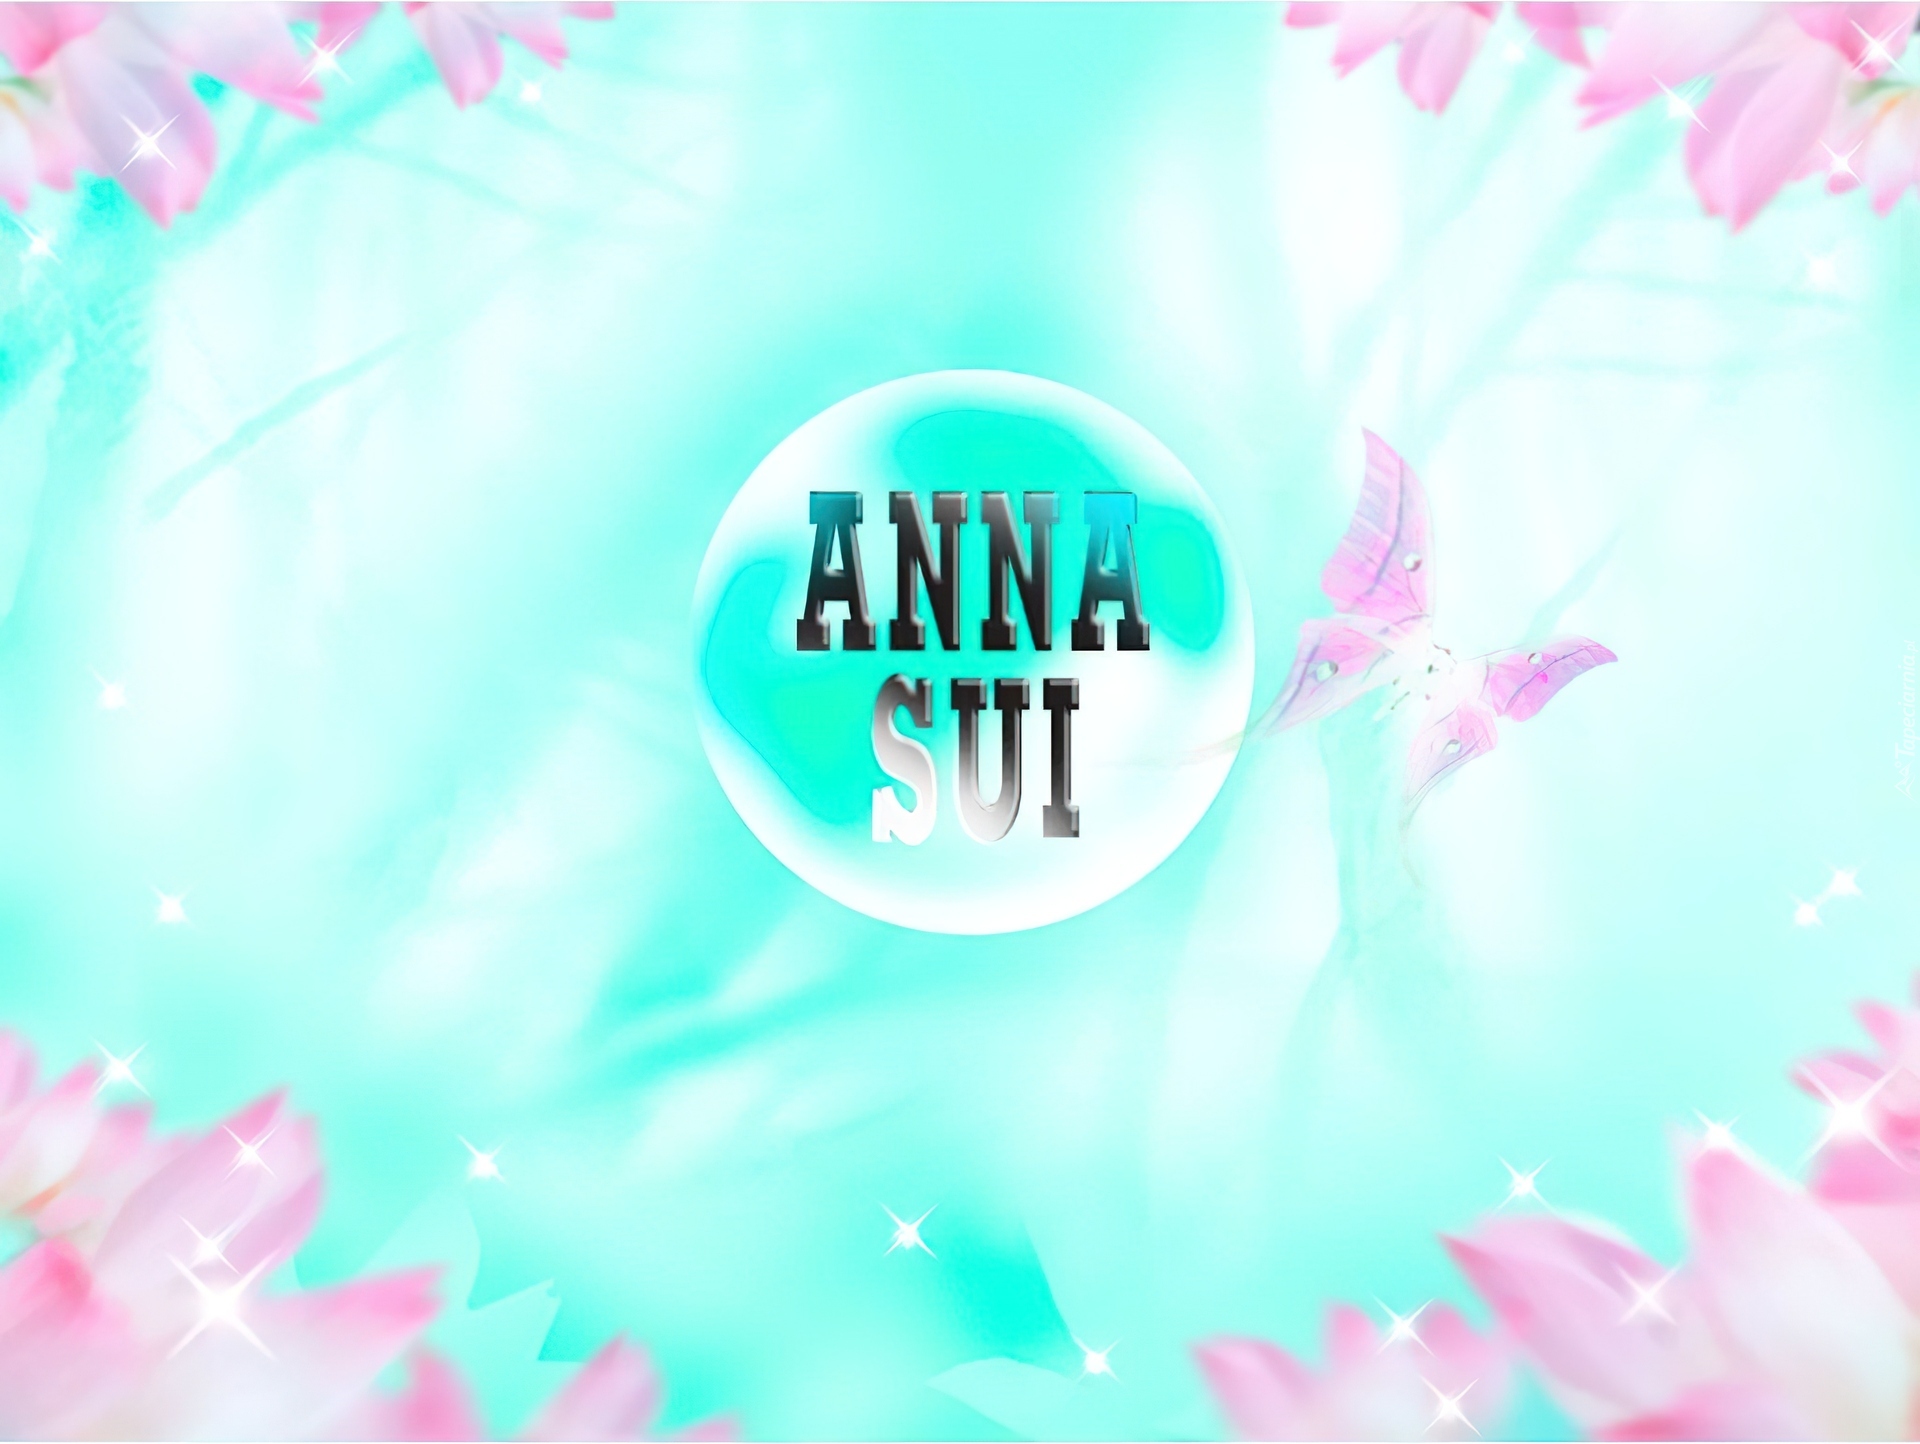 Anna Sui, kwiaty, motyle